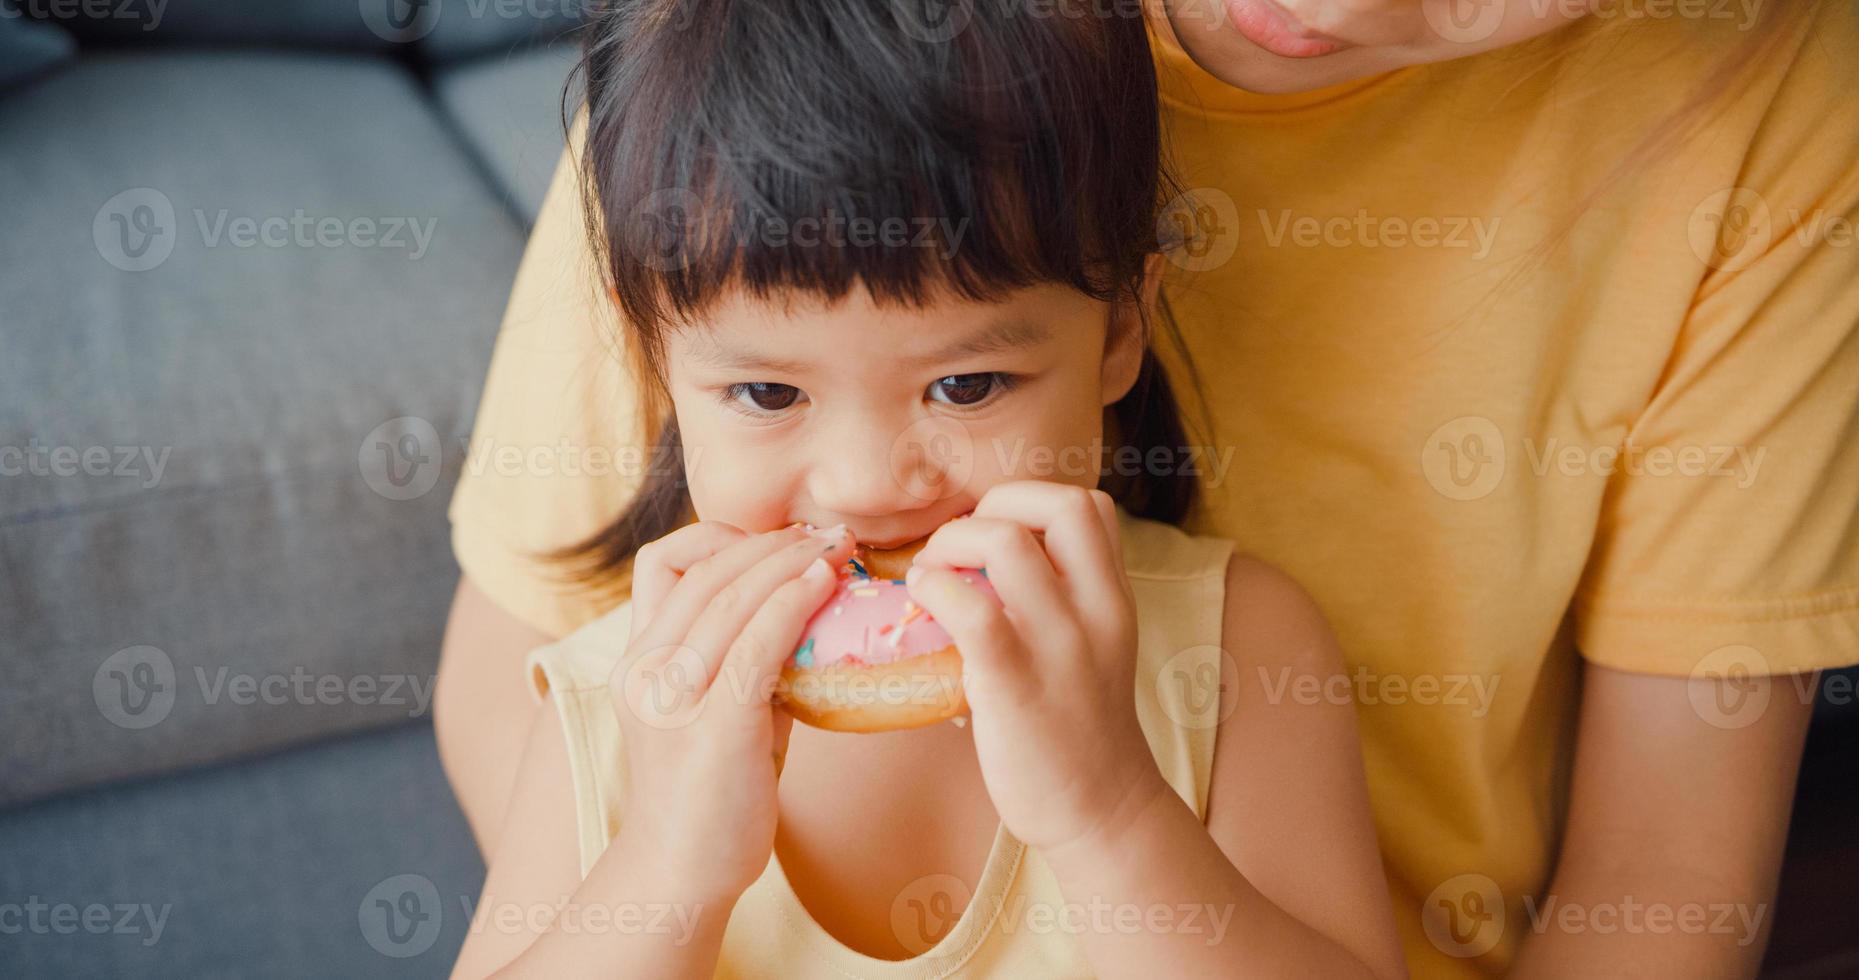 Fröhliche, fröhliche Asien-Familienmutter und Kleinkindmädchen, die Donuts essen und Spaß haben, entspannen Sie sich auf der Couch im Wohnzimmer im Haus. Zeit miteinander verbringen, soziale Distanz, Quarantäne für Coronavirus. foto